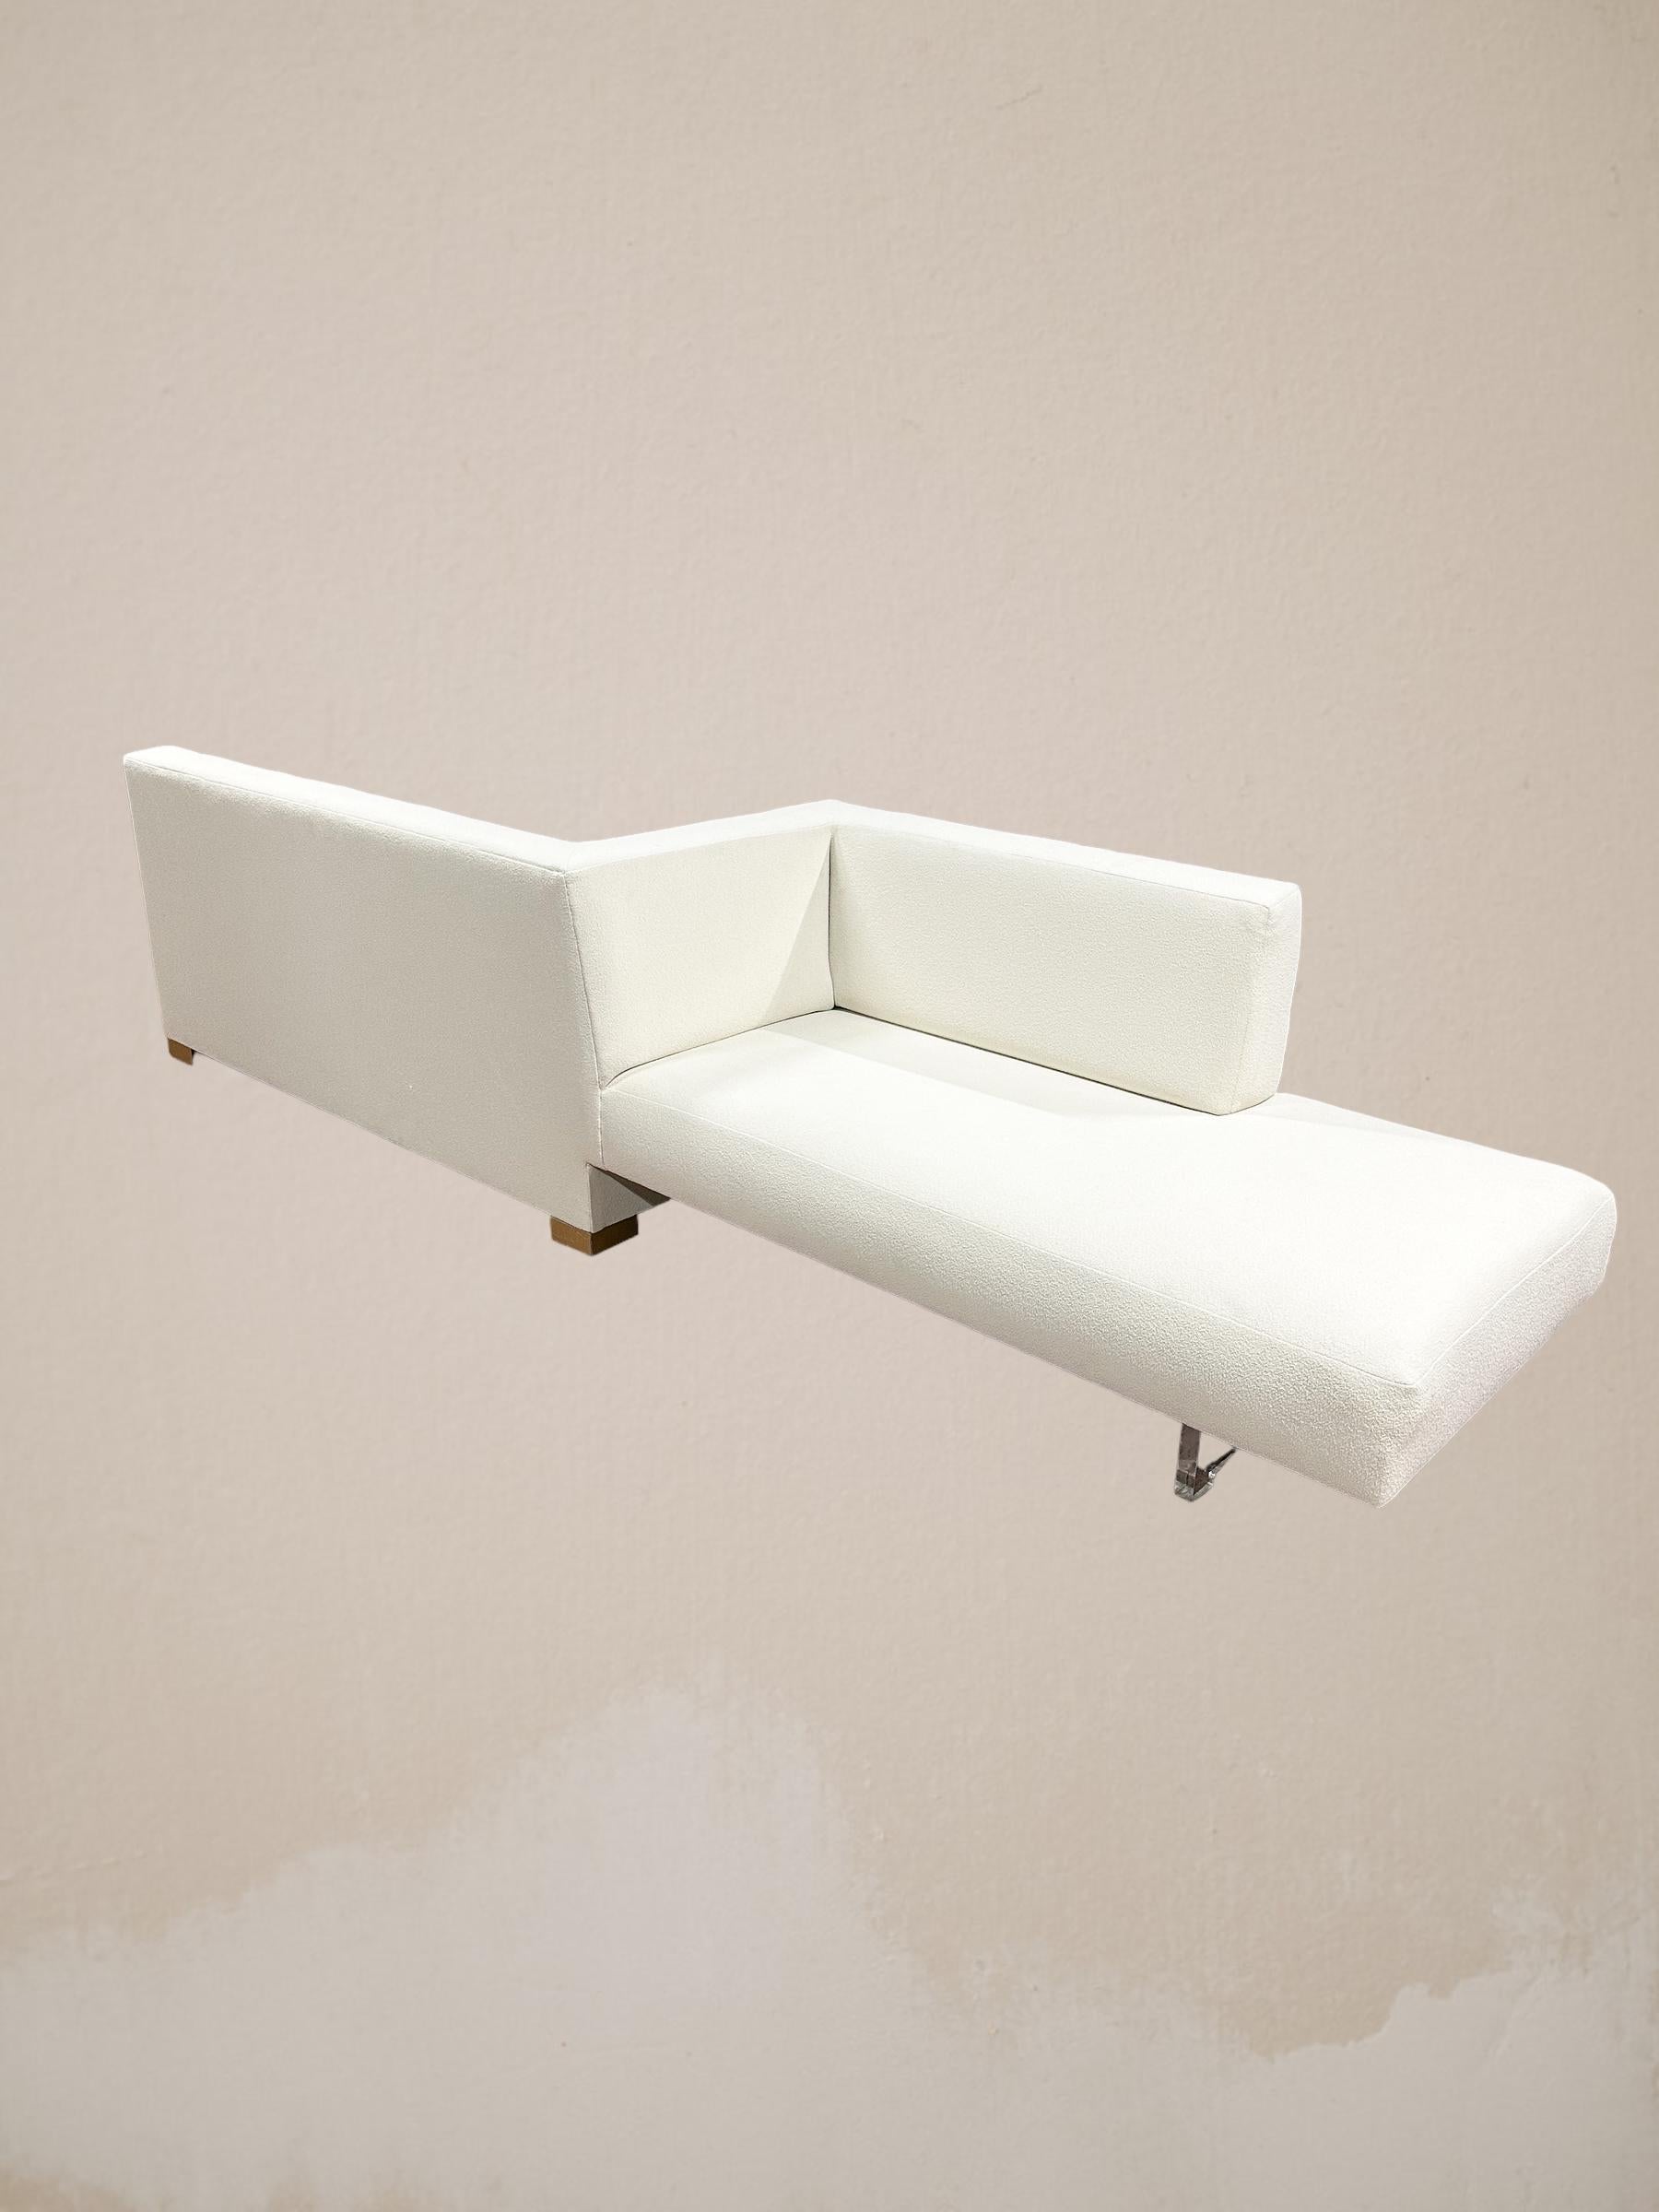 Außergewöhnliches und substanzielles Vladimir Kagan Unikat-Sofa mit zwei Seiten. Dieses Möbelstück ist als multidirektionales Sofa konzipiert, das Zugang und Komfort aus verschiedenen Blickwinkeln ermöglicht. Klare Linien und klare Sockel aus Lucite